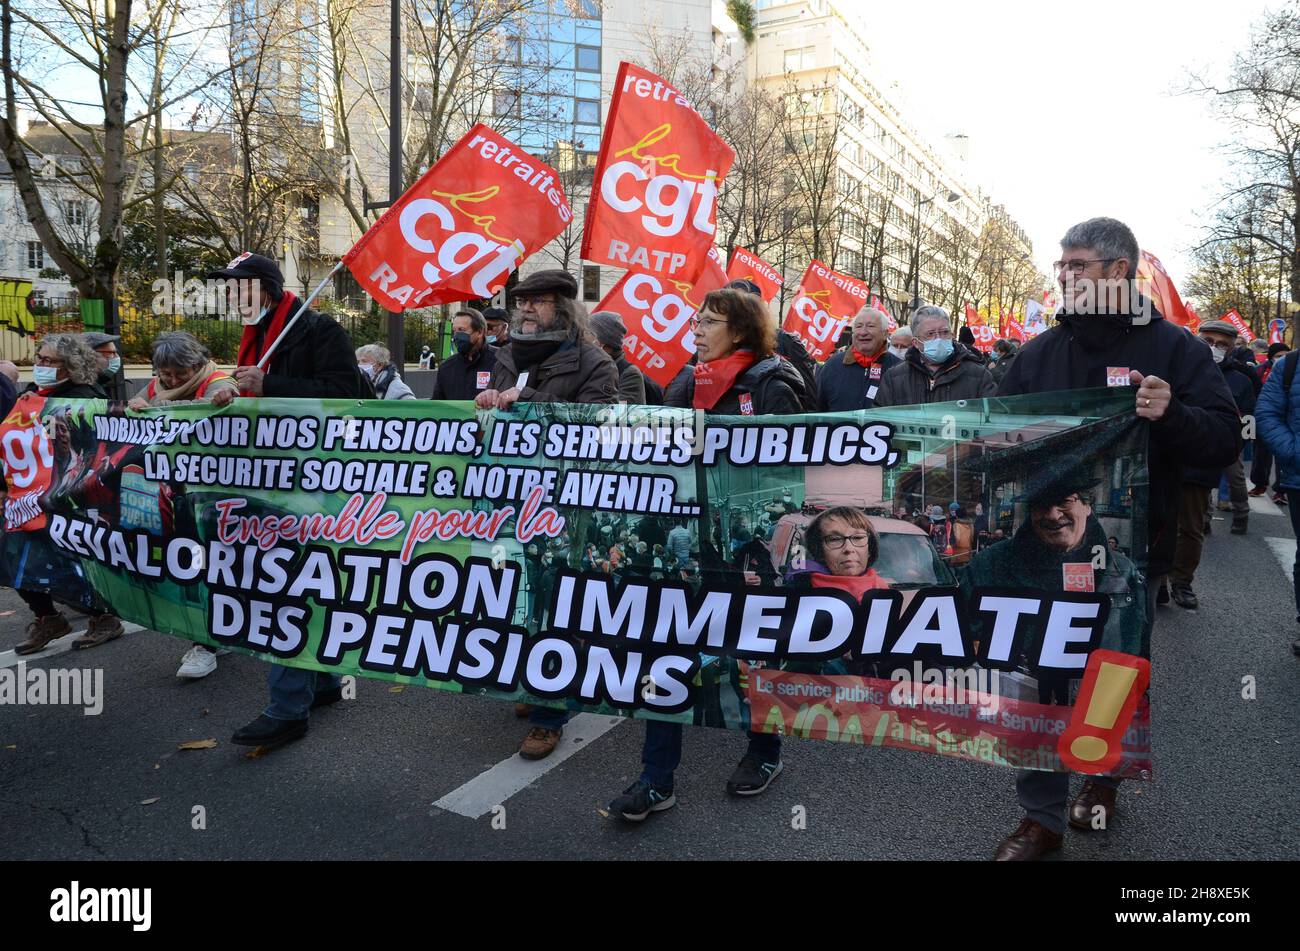 Manifestation nationale des retraités du boulevard Raspail à Paris.Les retraités viennent de toutes les régions pour demander une réévaluation de leurs pensions. Banque D'Images